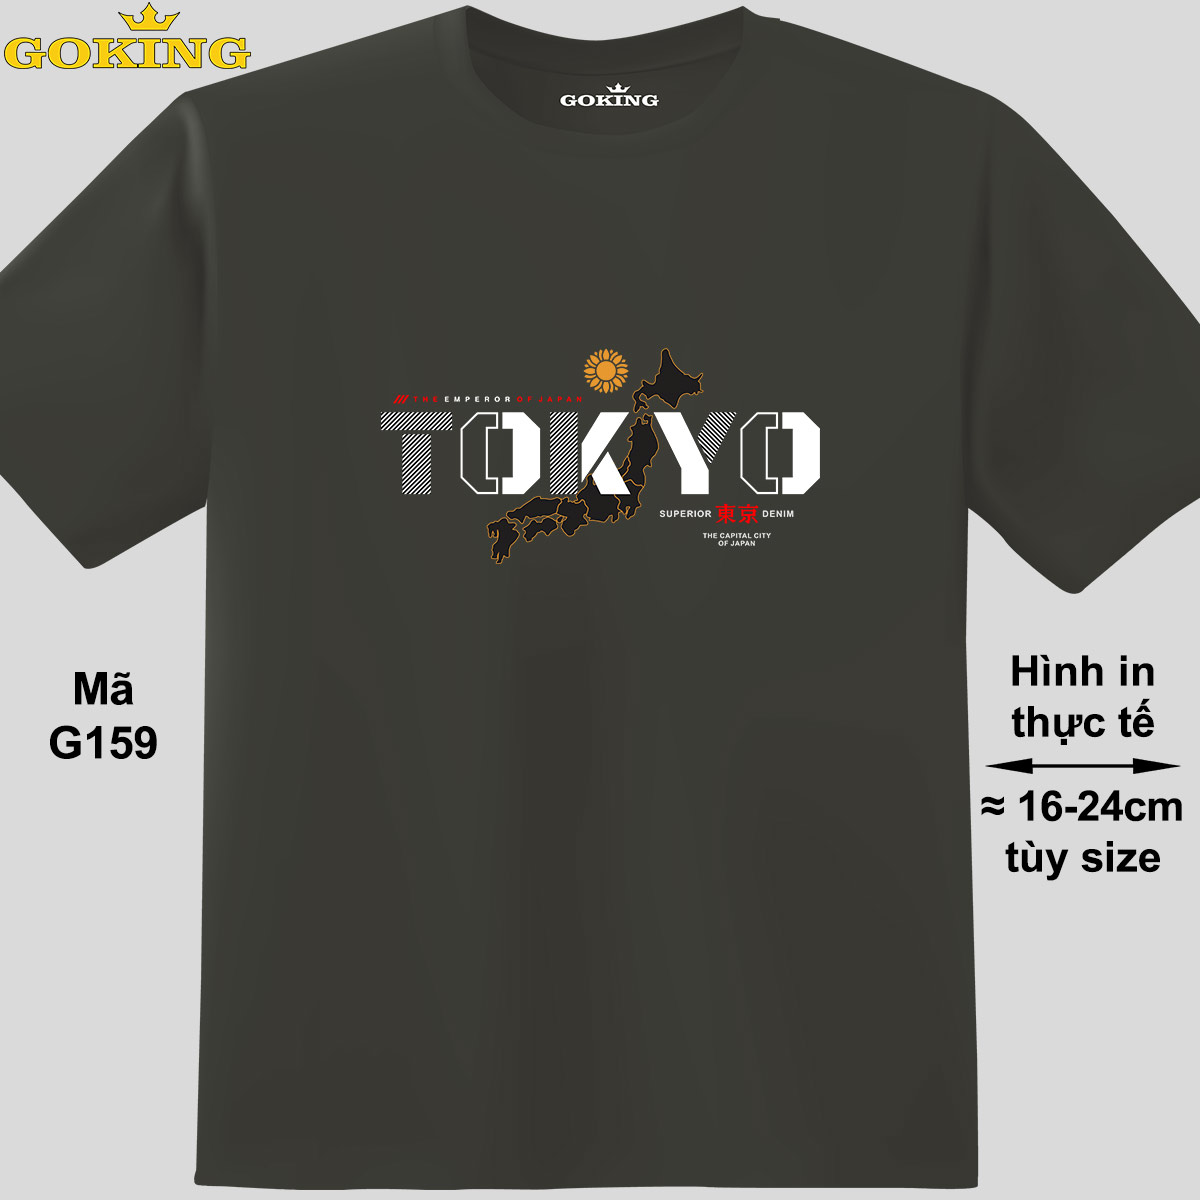 Hình ảnh TOKYO, mã G159. Áo thun hàng hiệu GOKING, form unisex cho nam nữ, trẻ em, bé trai gái. Áo phông in hình chữ đẹp. Quà tặng cao cấp cho gia đình, cặp đôi, hội nhóm, doanh nghiệp